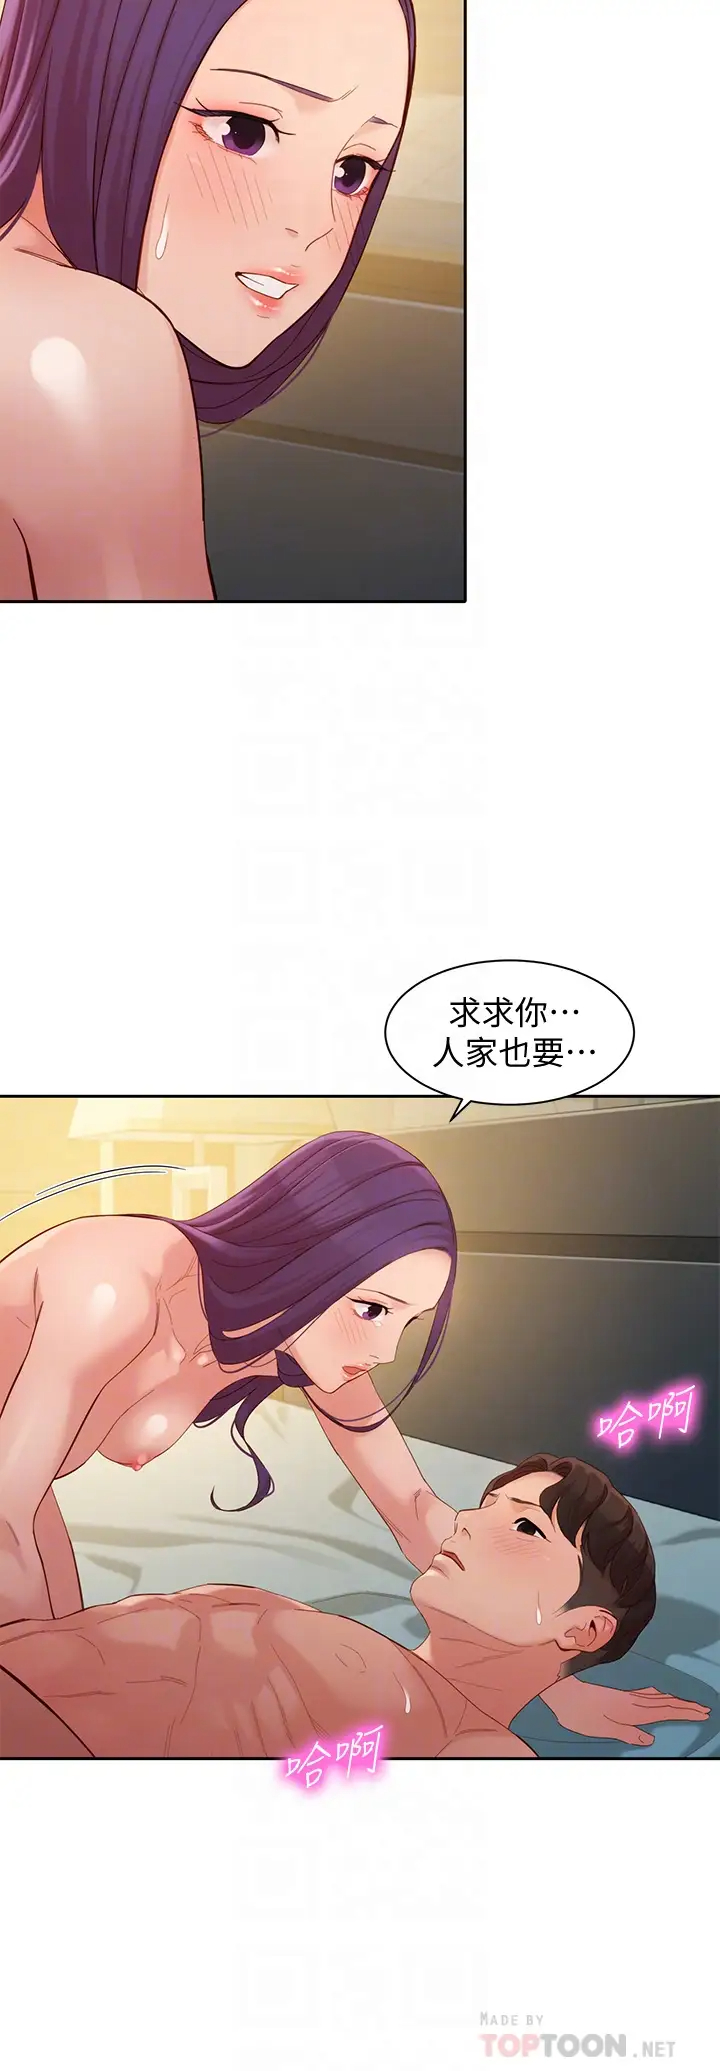 韩国污漫画 女神寫真 第52话淫靡的双飞体验 12